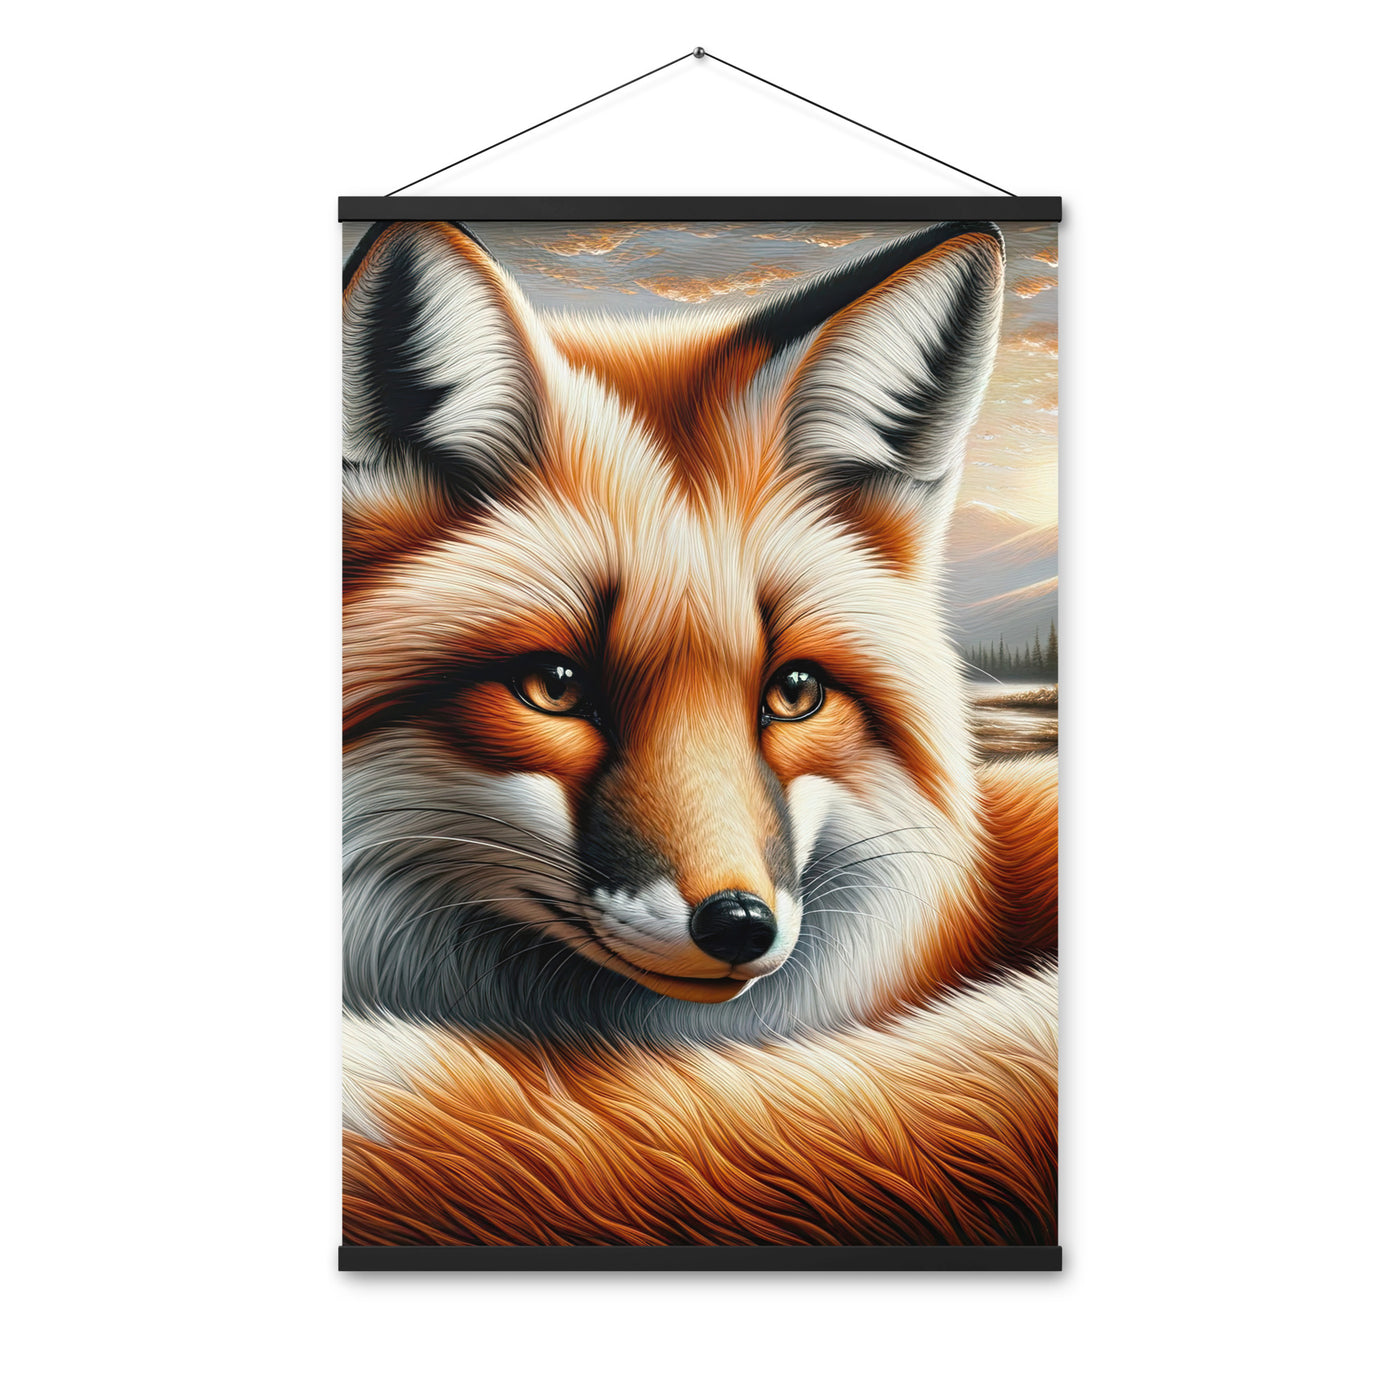 Ölgemälde eines nachdenklichen Fuchses mit weisem Blick - Premium Poster mit Aufhängung camping xxx yyy zzz 61 x 91.4 cm